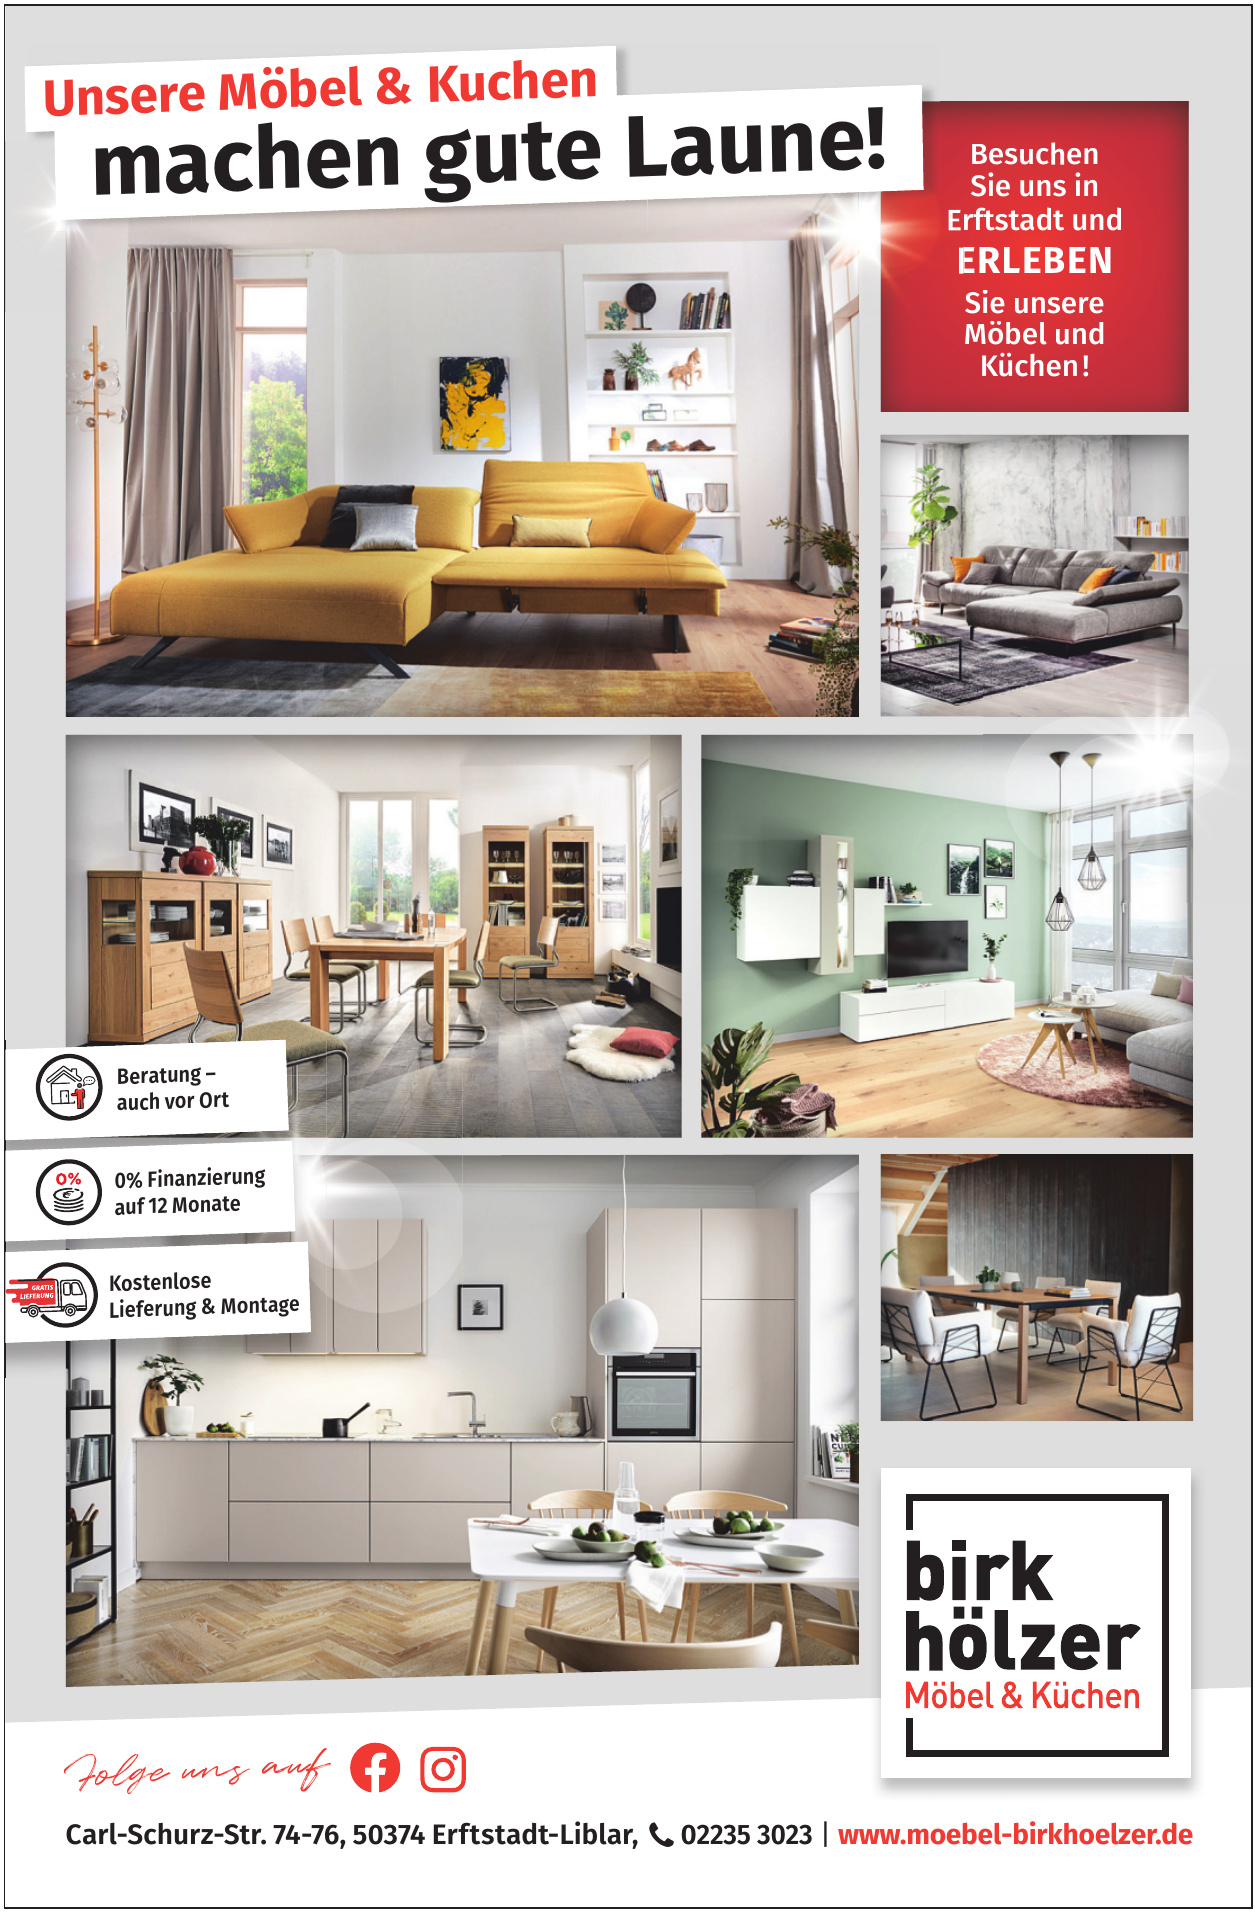 Birk - Hölzer Möbel & Küchen